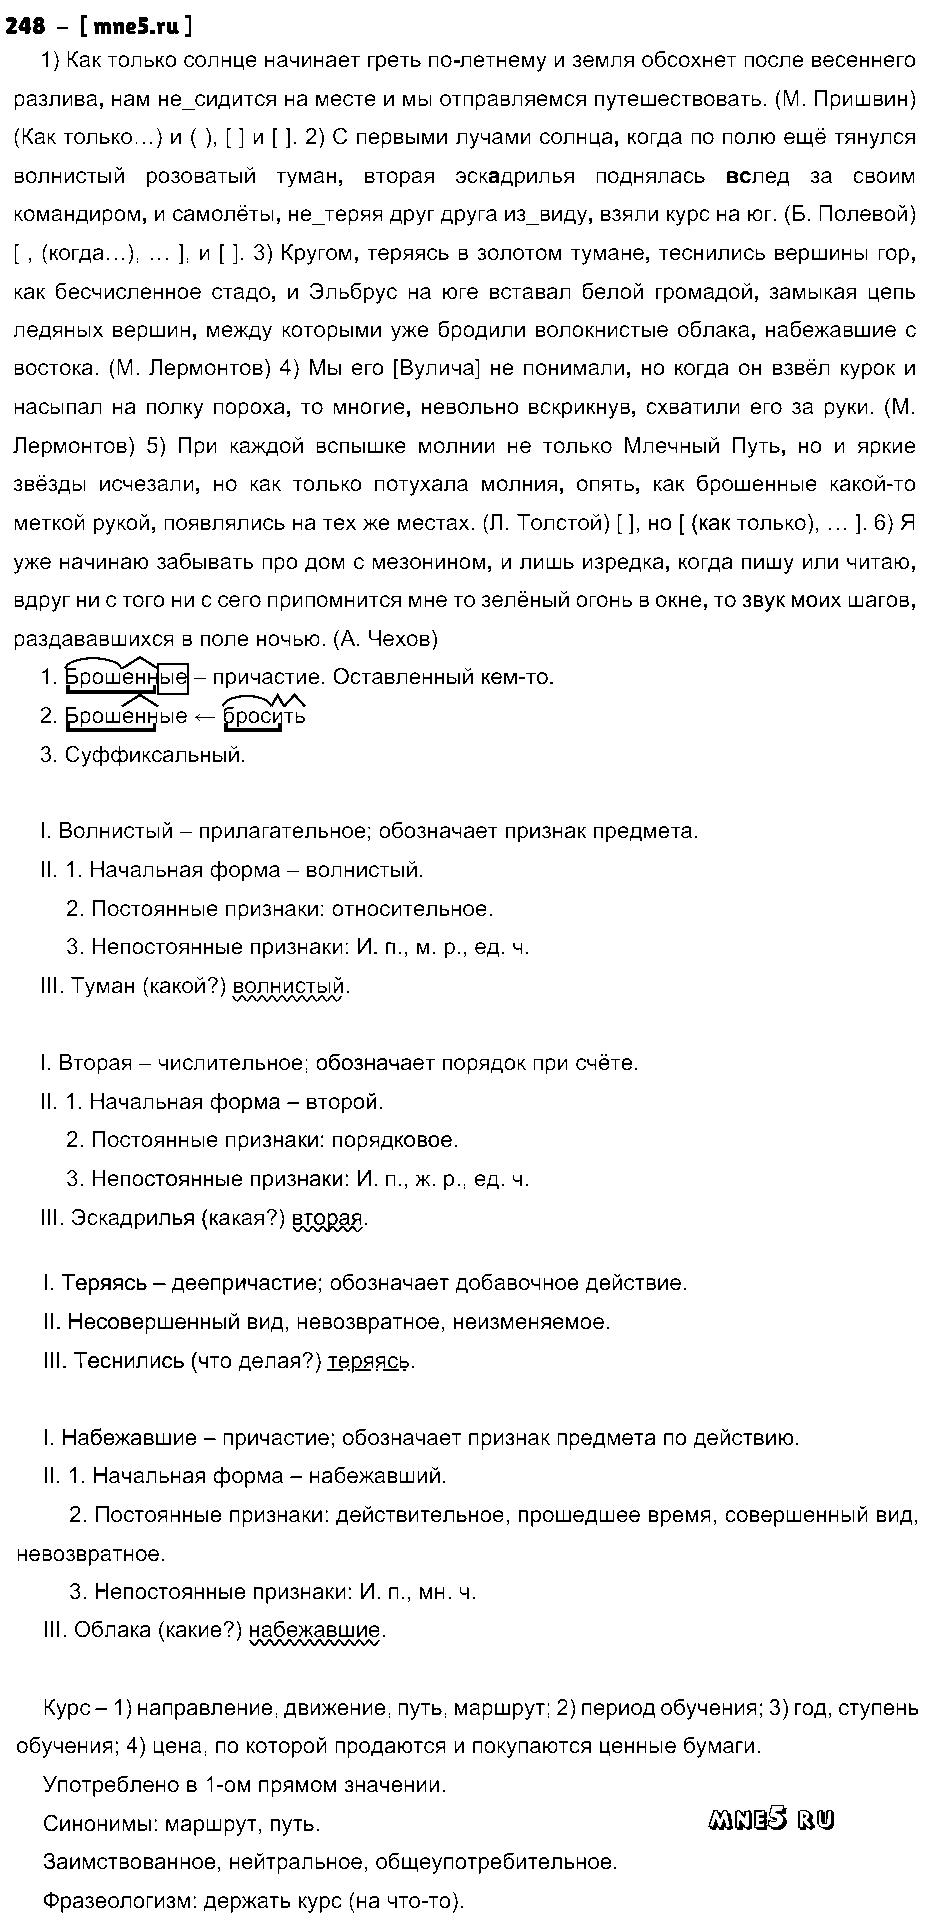 ГДЗ Русский язык 9 класс - 248